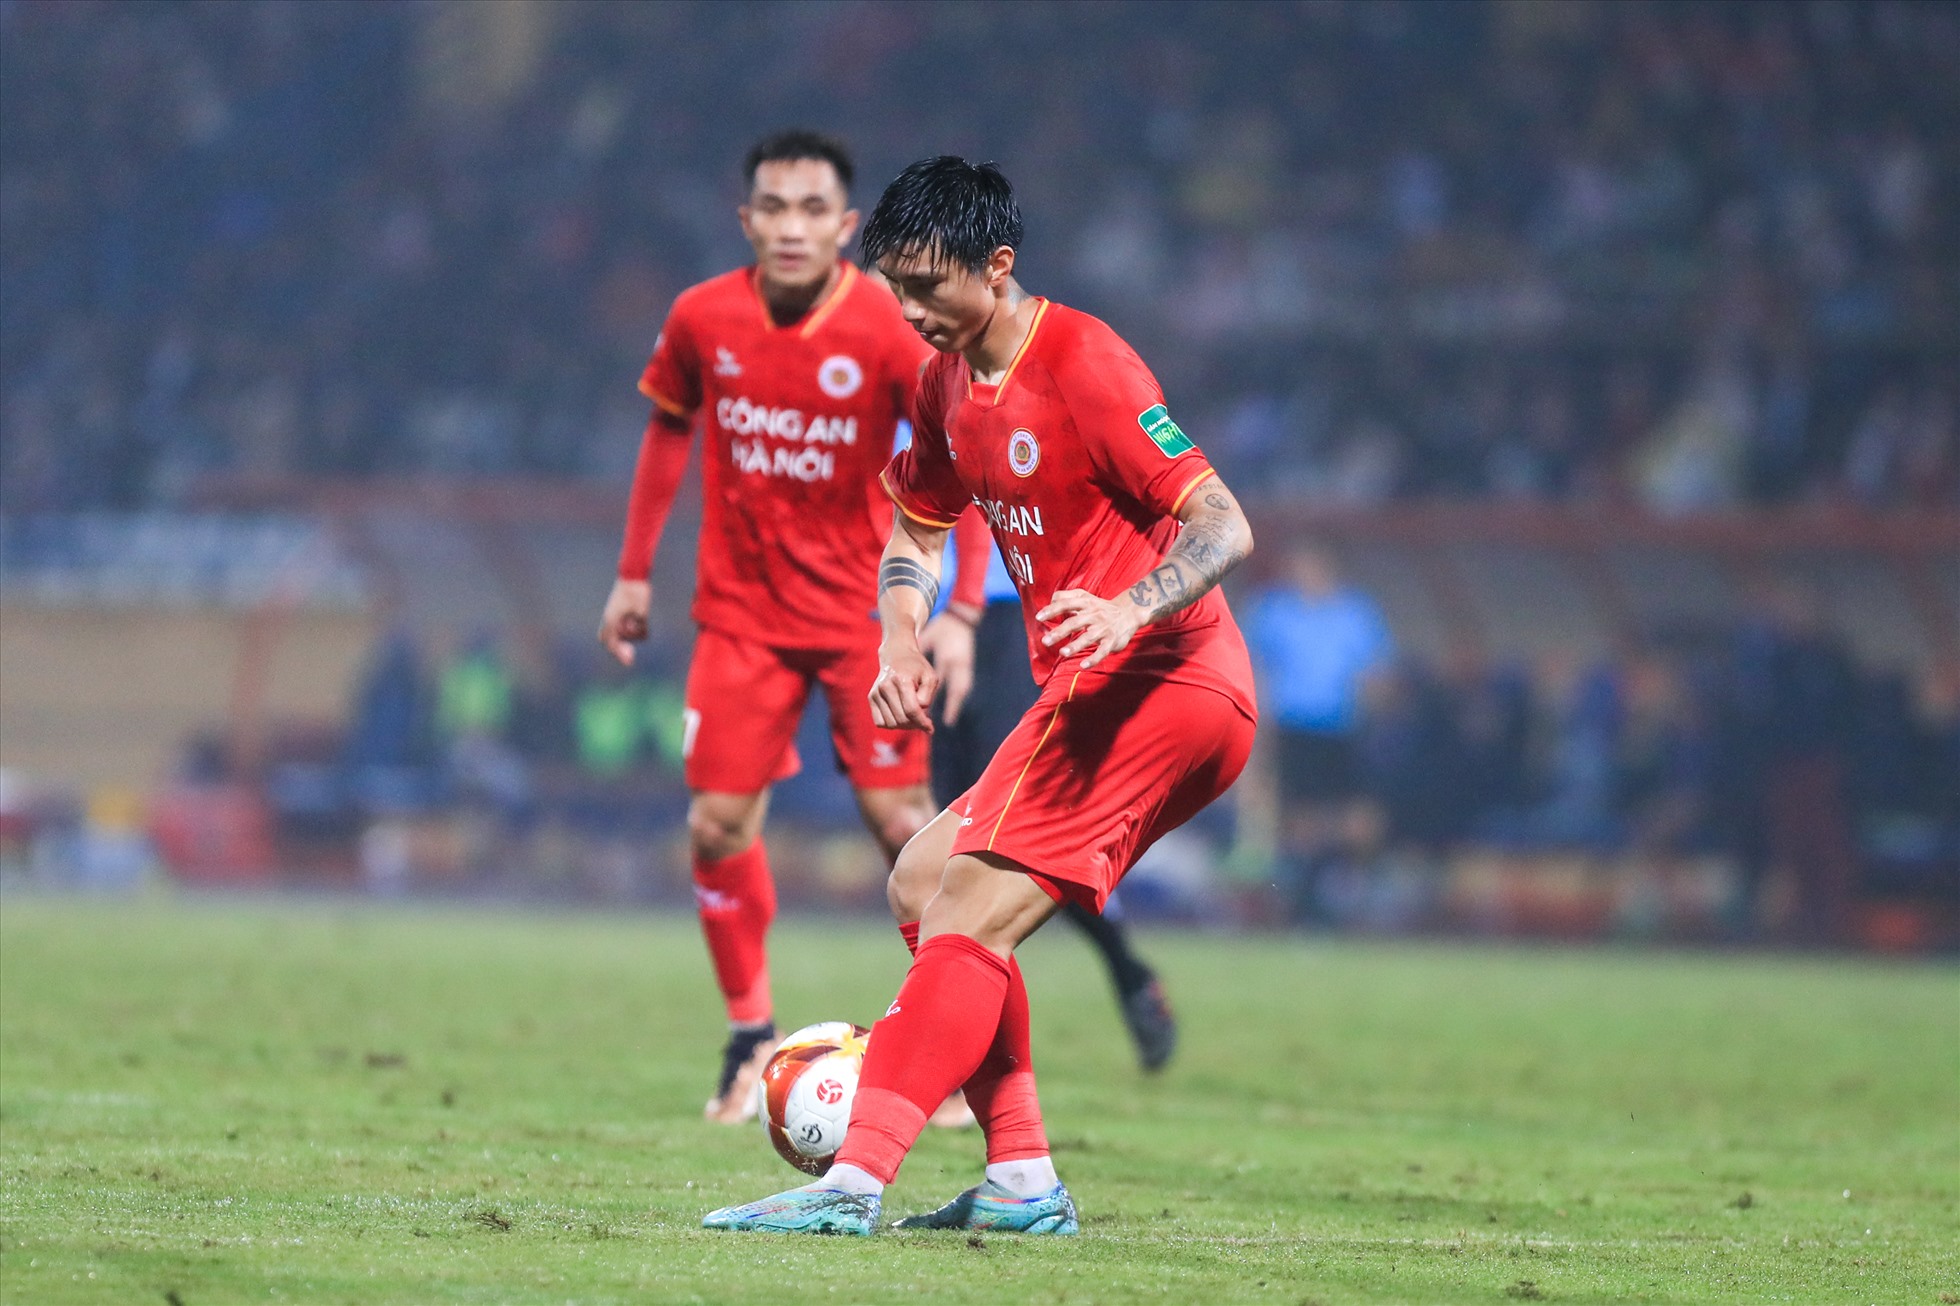 Văn Hậu cao hứng thể hiện pha chuyền bóng “mắt lác” khi câu lạc bộ Công an Hà Nội đang dẫn Bình Định với tỉ số 2-0.